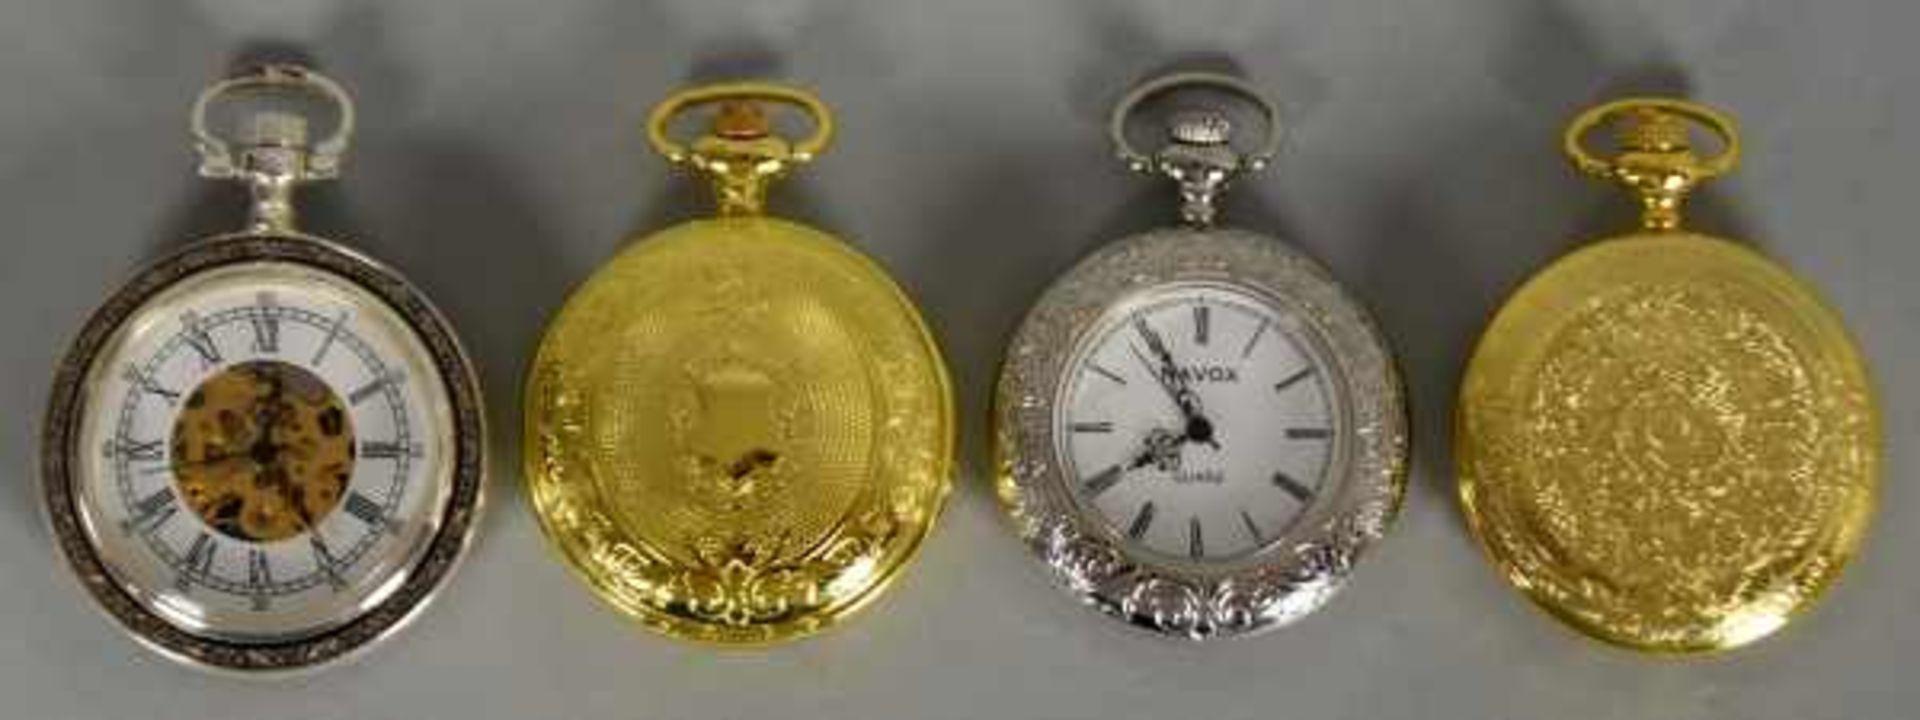 KONVOLUT TASCHENUHREN(4) 3 dekorative Uhren, Quartz u. eine weitere mit Handaufzug und Blick auf das